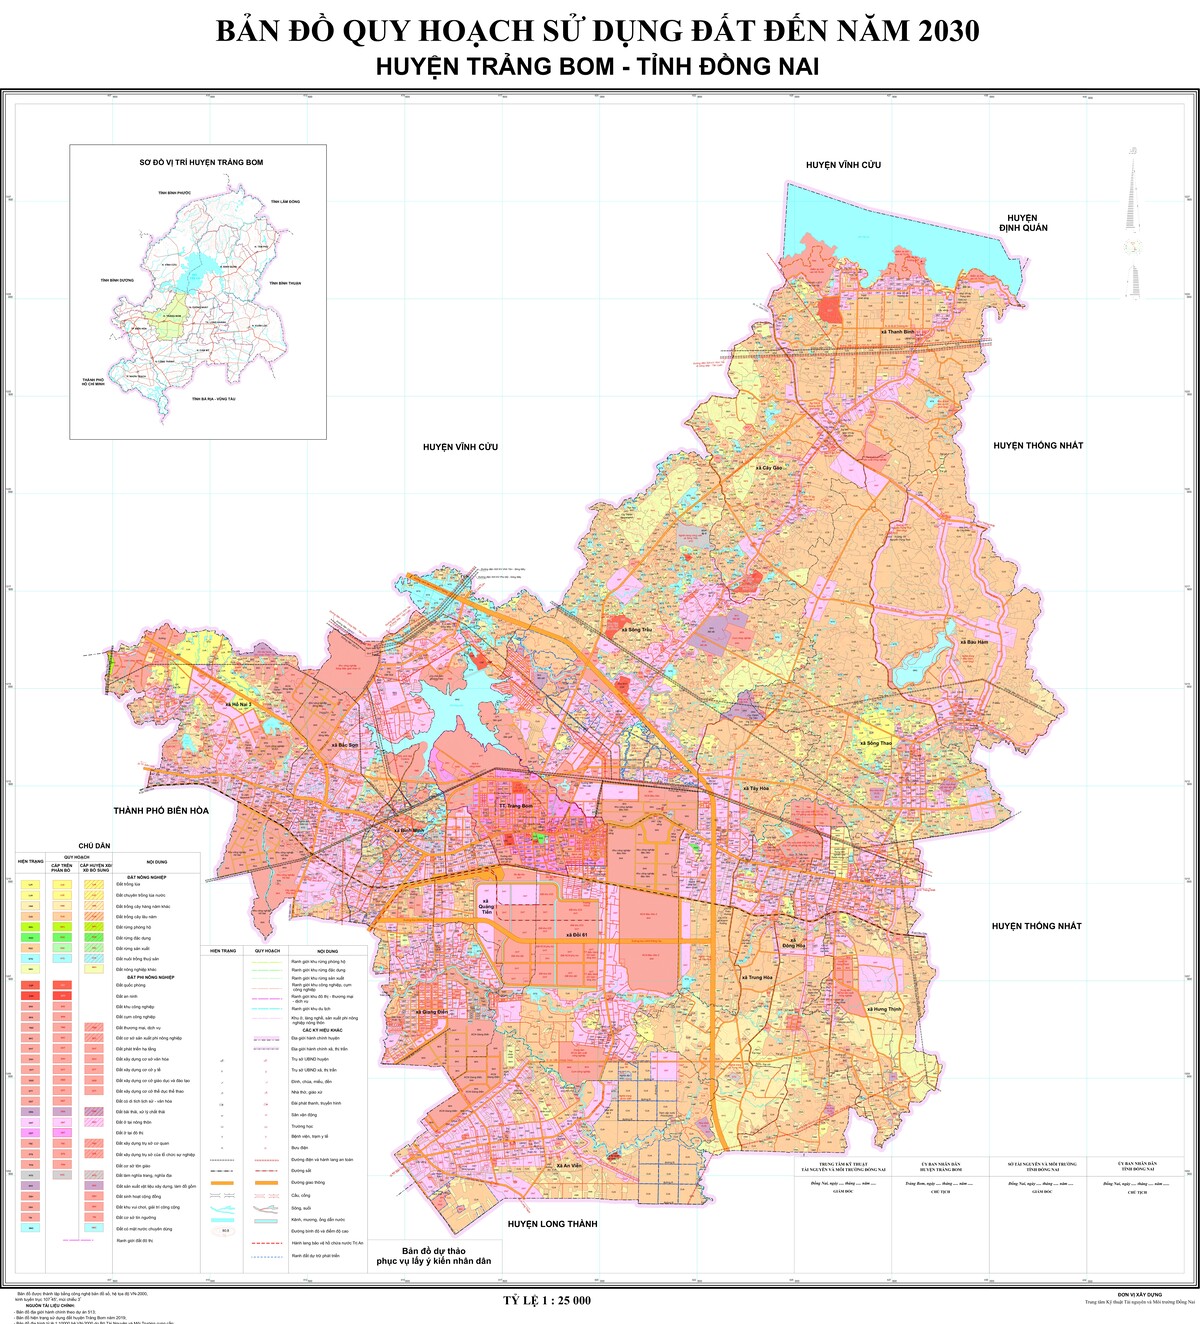 Bản đồ quy hoạch huyện Trảng Bom, tỉnh Đồng Nai đến năm 2030